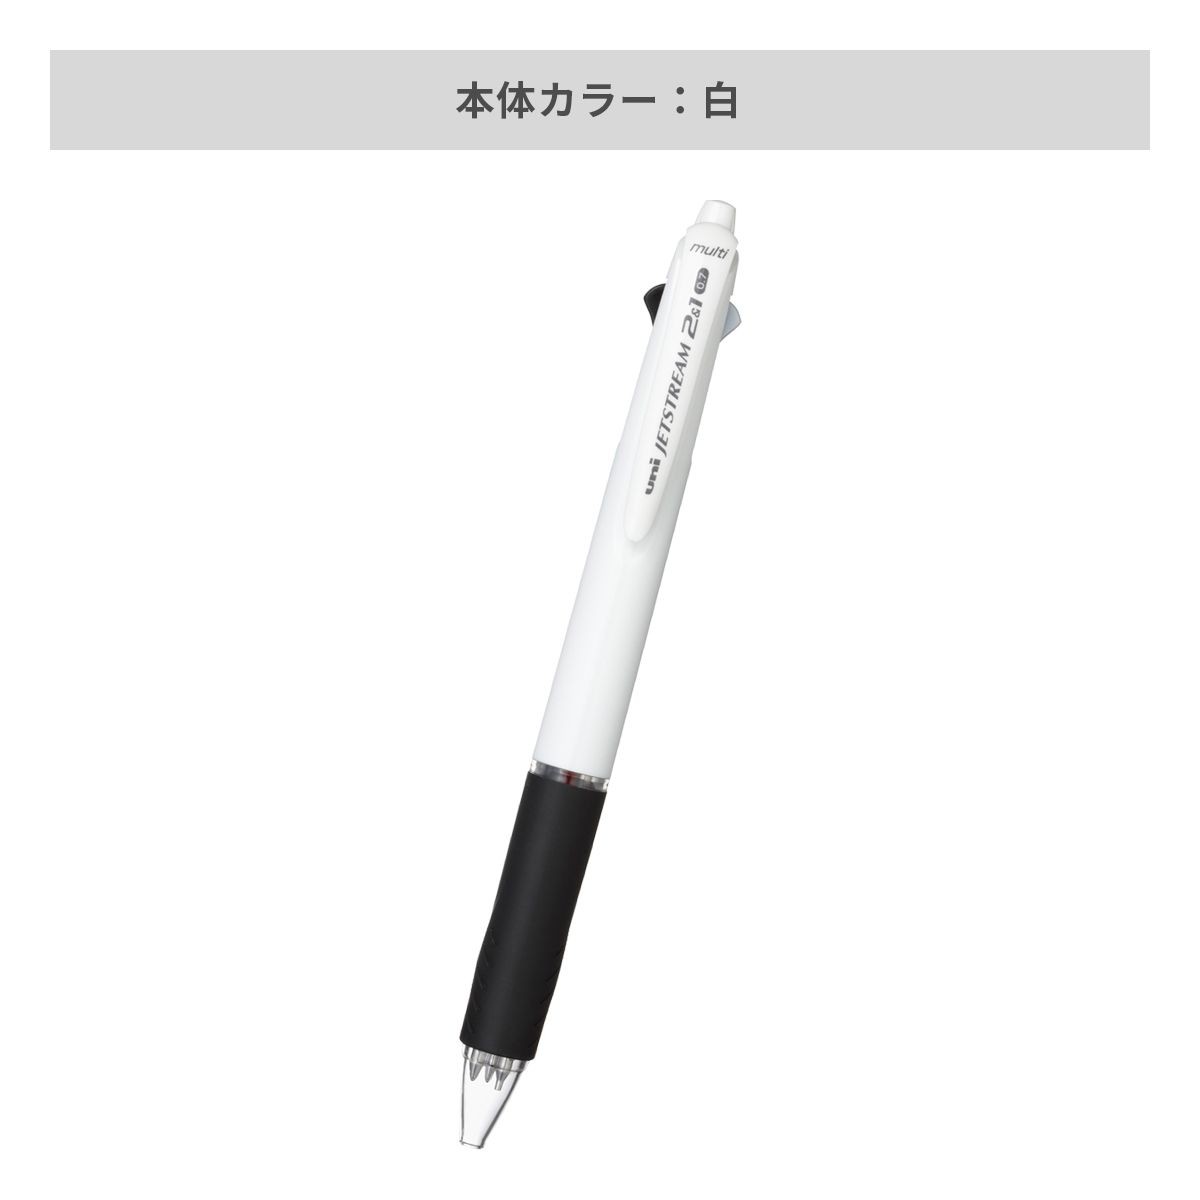 三菱鉛筆 ジェットストリーム 2&1 多機能ペン 白軸 0.7mm【多機能ペン / インクジェット印刷】 画像3